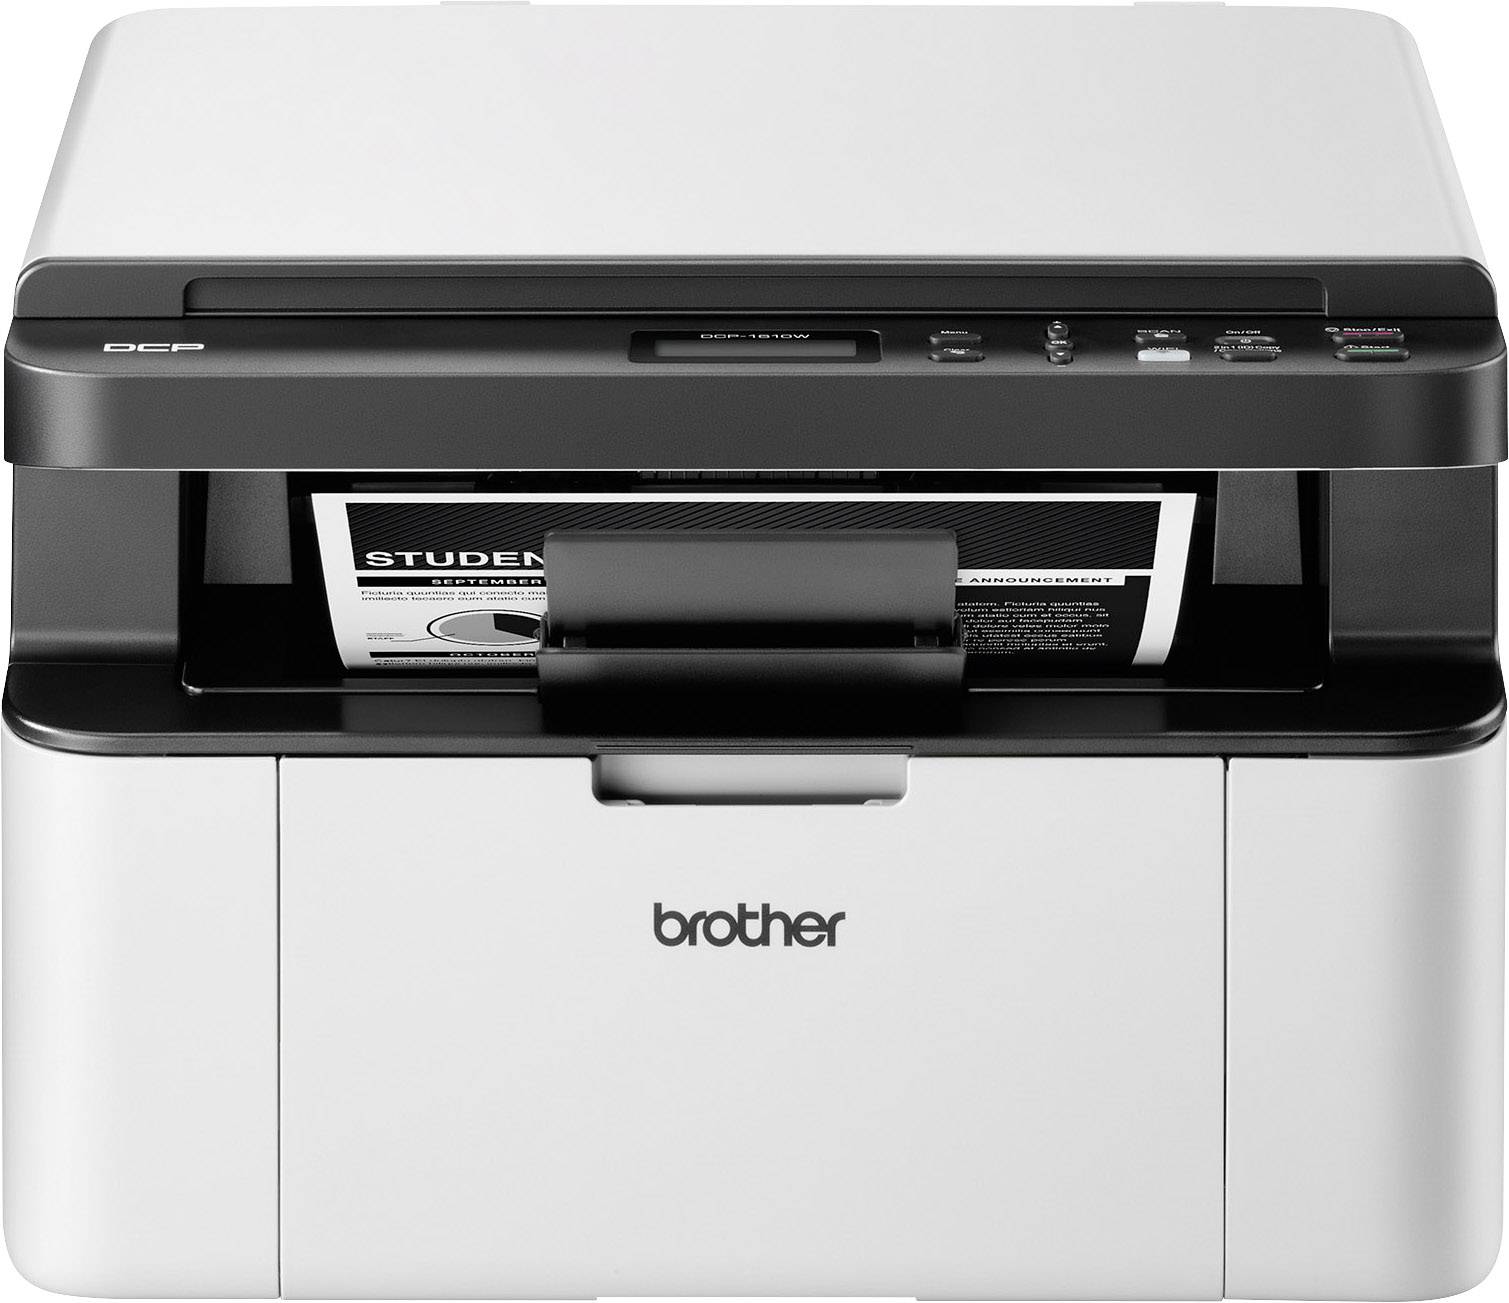 A4 WLAN USB, Brother Multifunktionsdrucker Schwarzweiß Laser Kopierer Drucker, DCP-1610W kaufen Scanner,